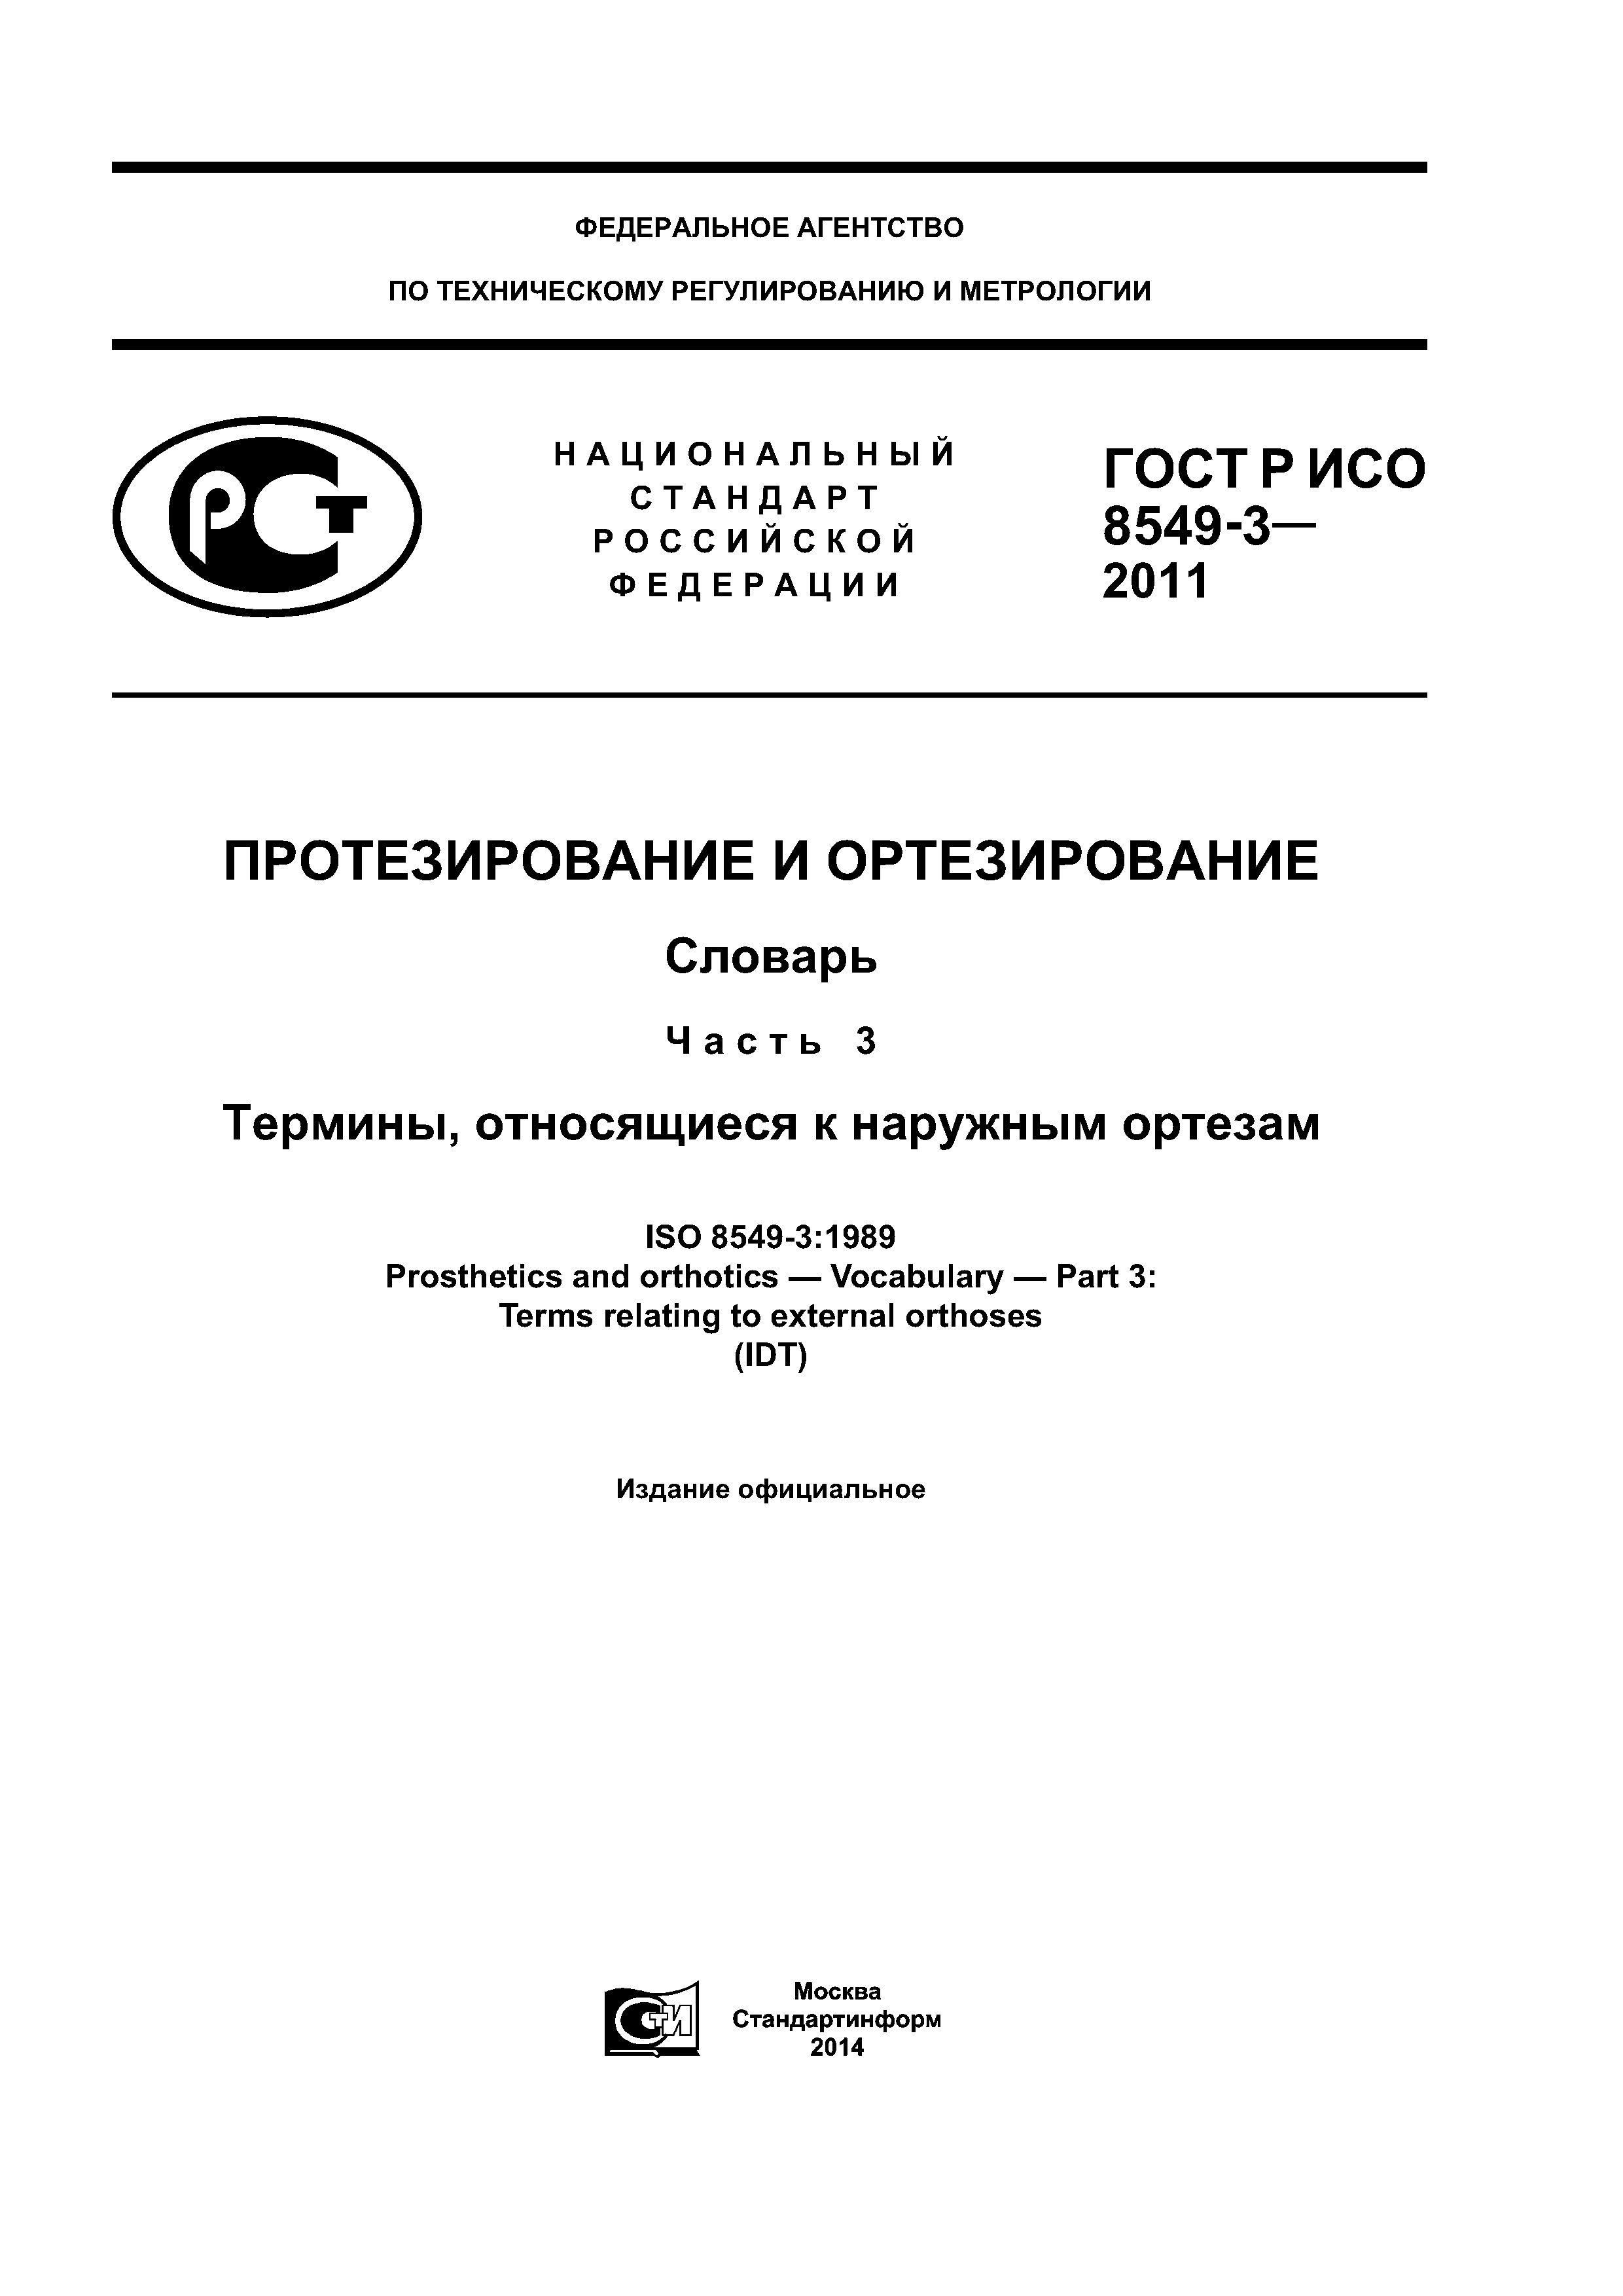 ГОСТ Р ИСО 8549-3-2011